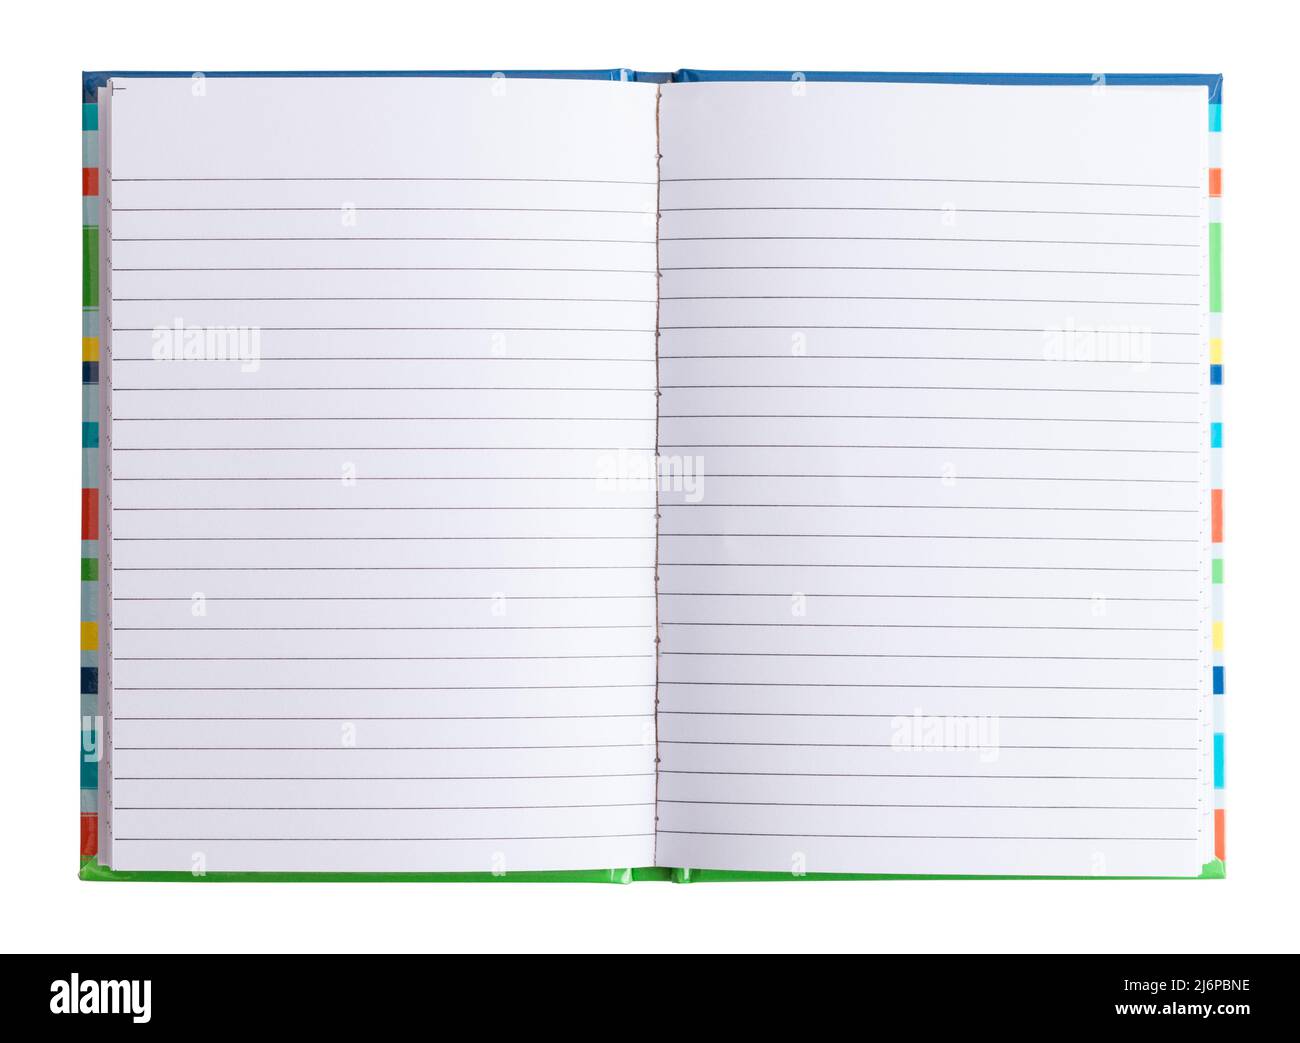 Notizbuch mit weißen, blank linierten Papierseiten öffnen. Stockfoto